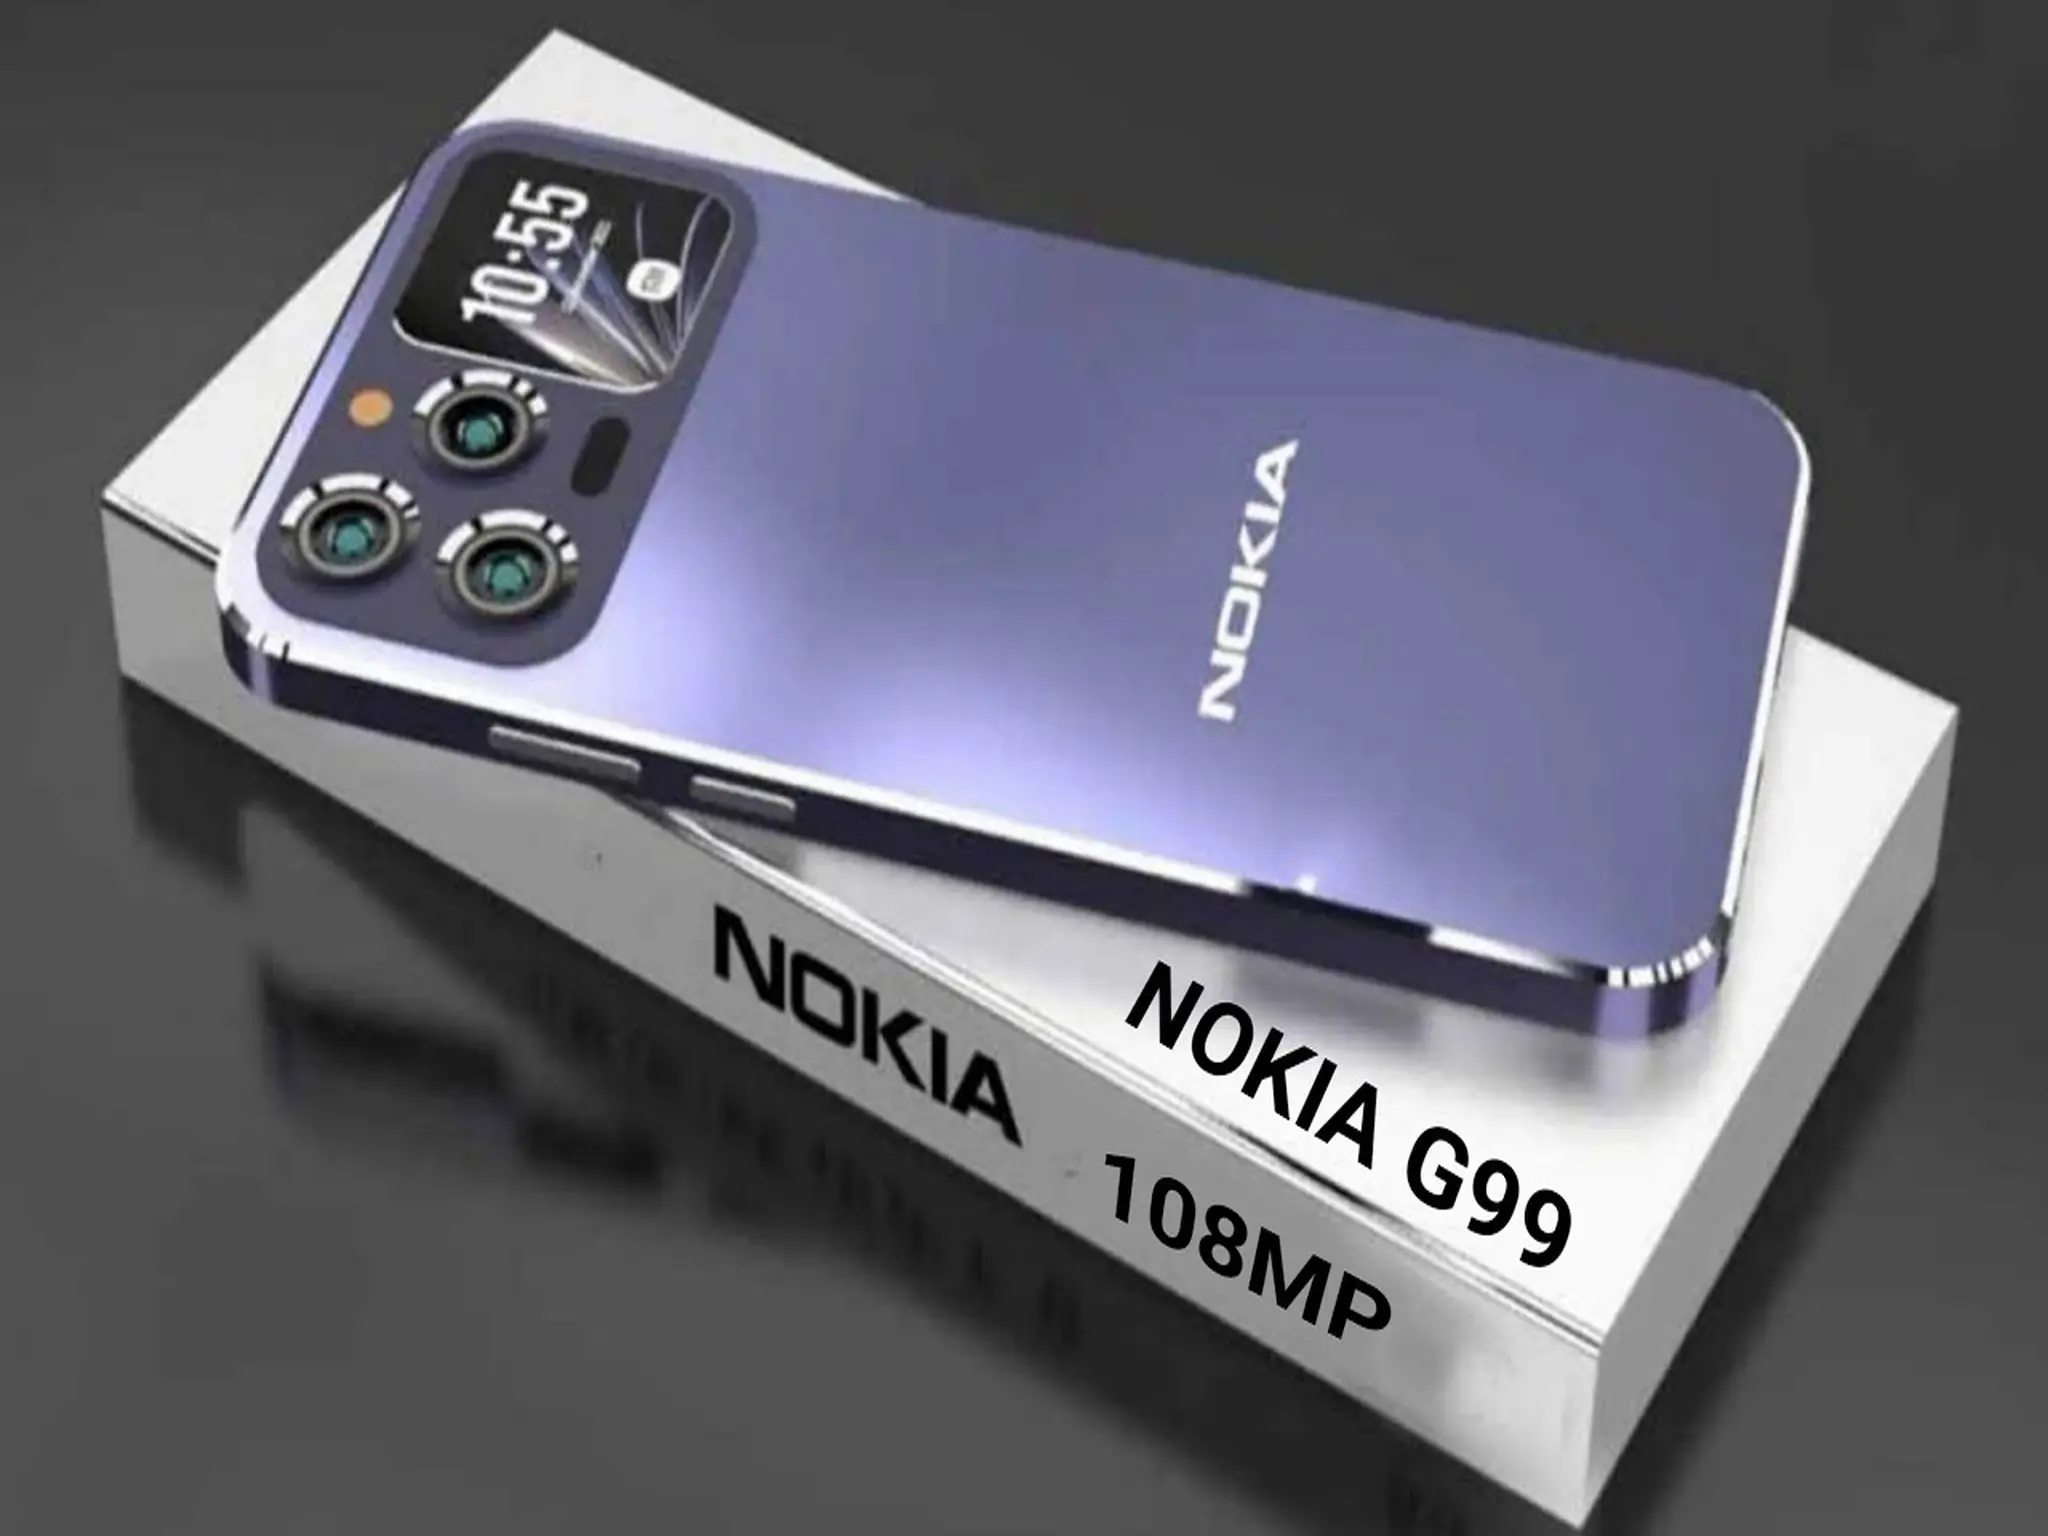 شركة نوكيا تستعد الى إطلاق أحدث هواتفها Nokia G99 5G بكاميرا خرافية